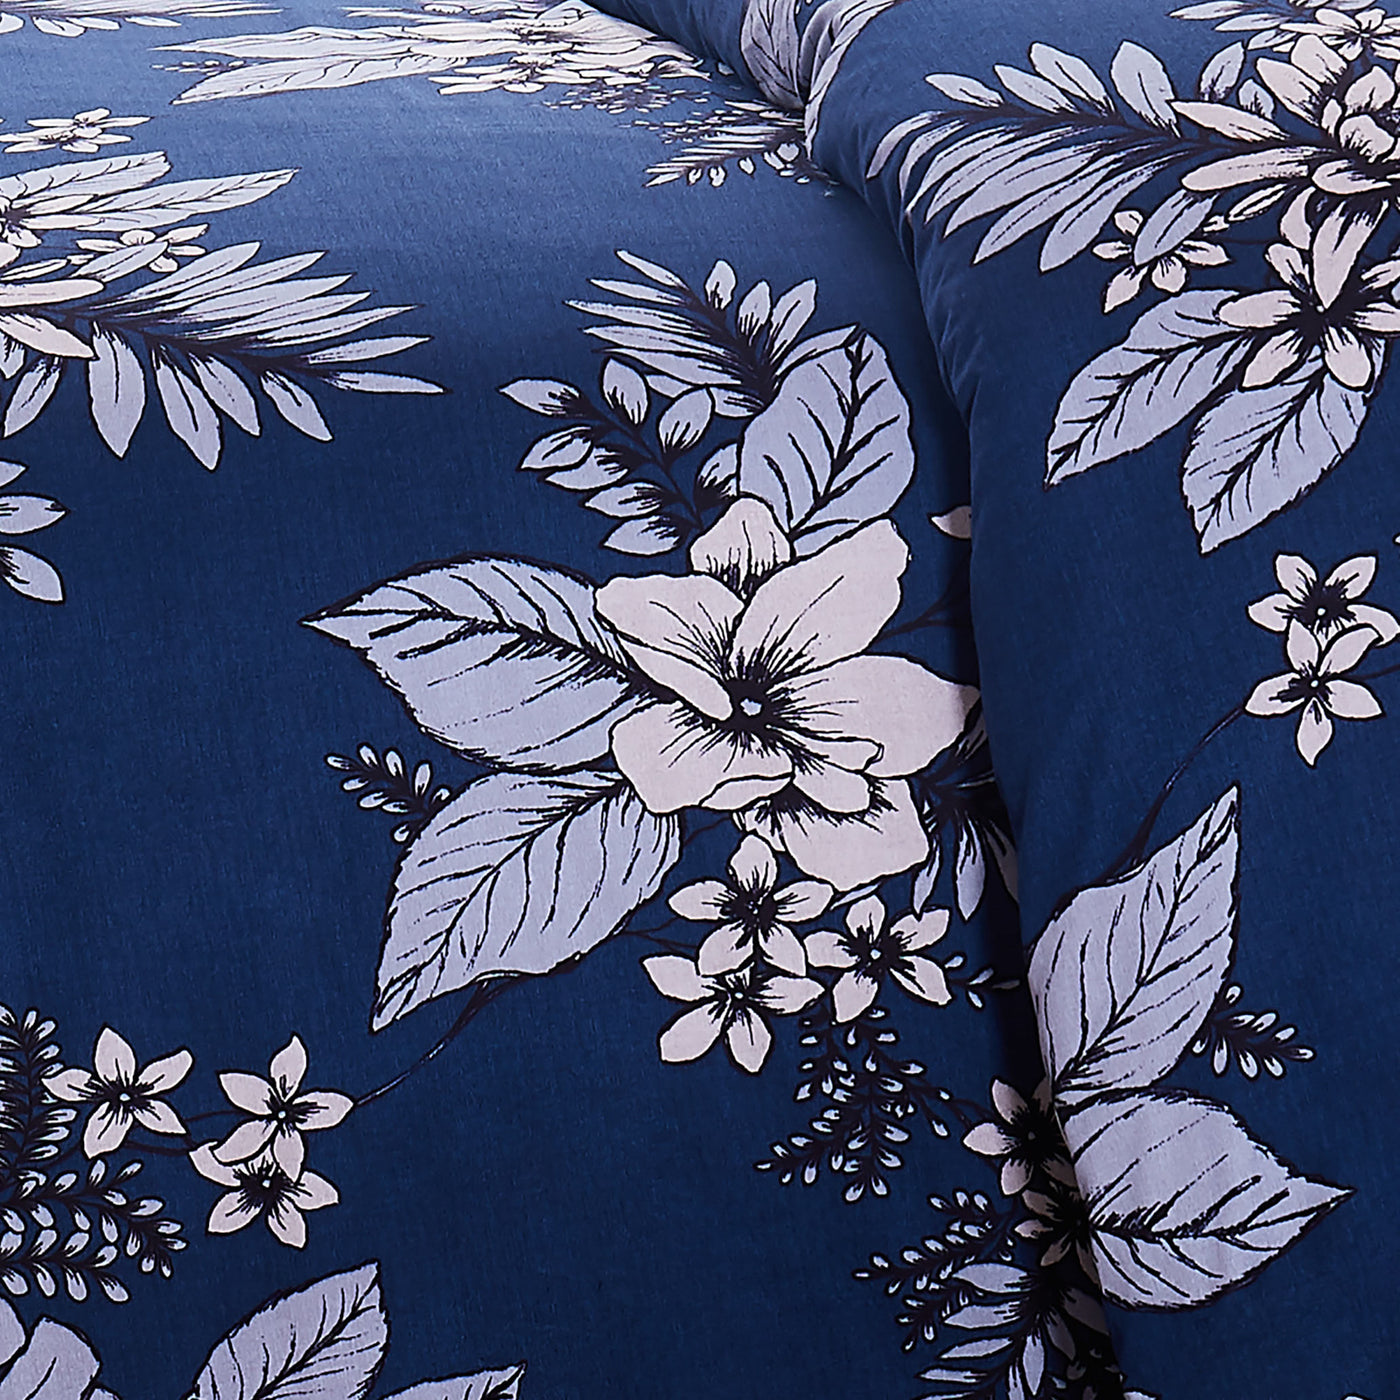 Flourish duvet cover in blue